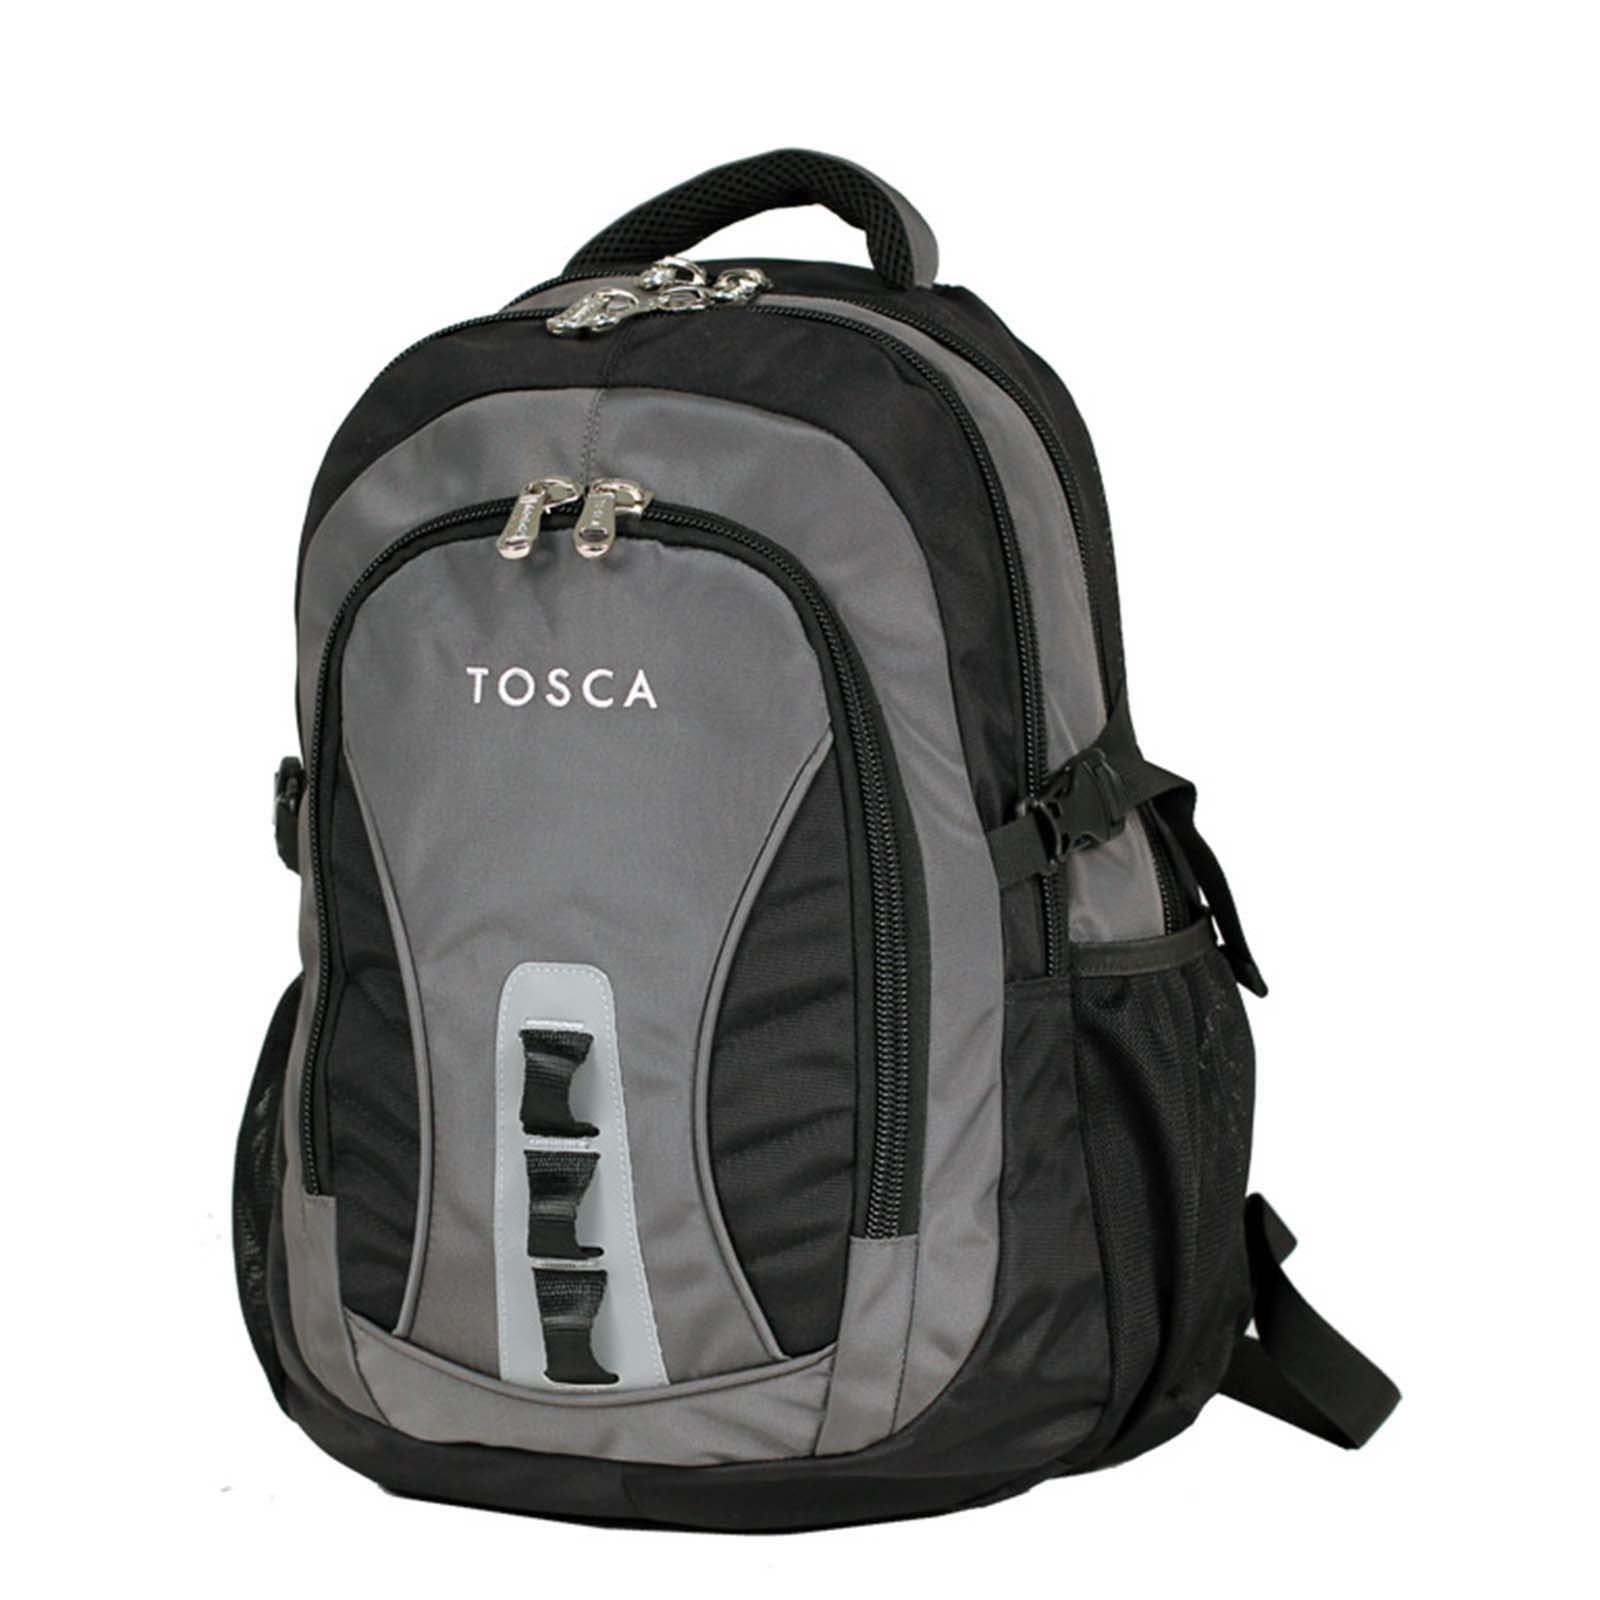 tosca-laptop-backpack-37l-black-grey-front